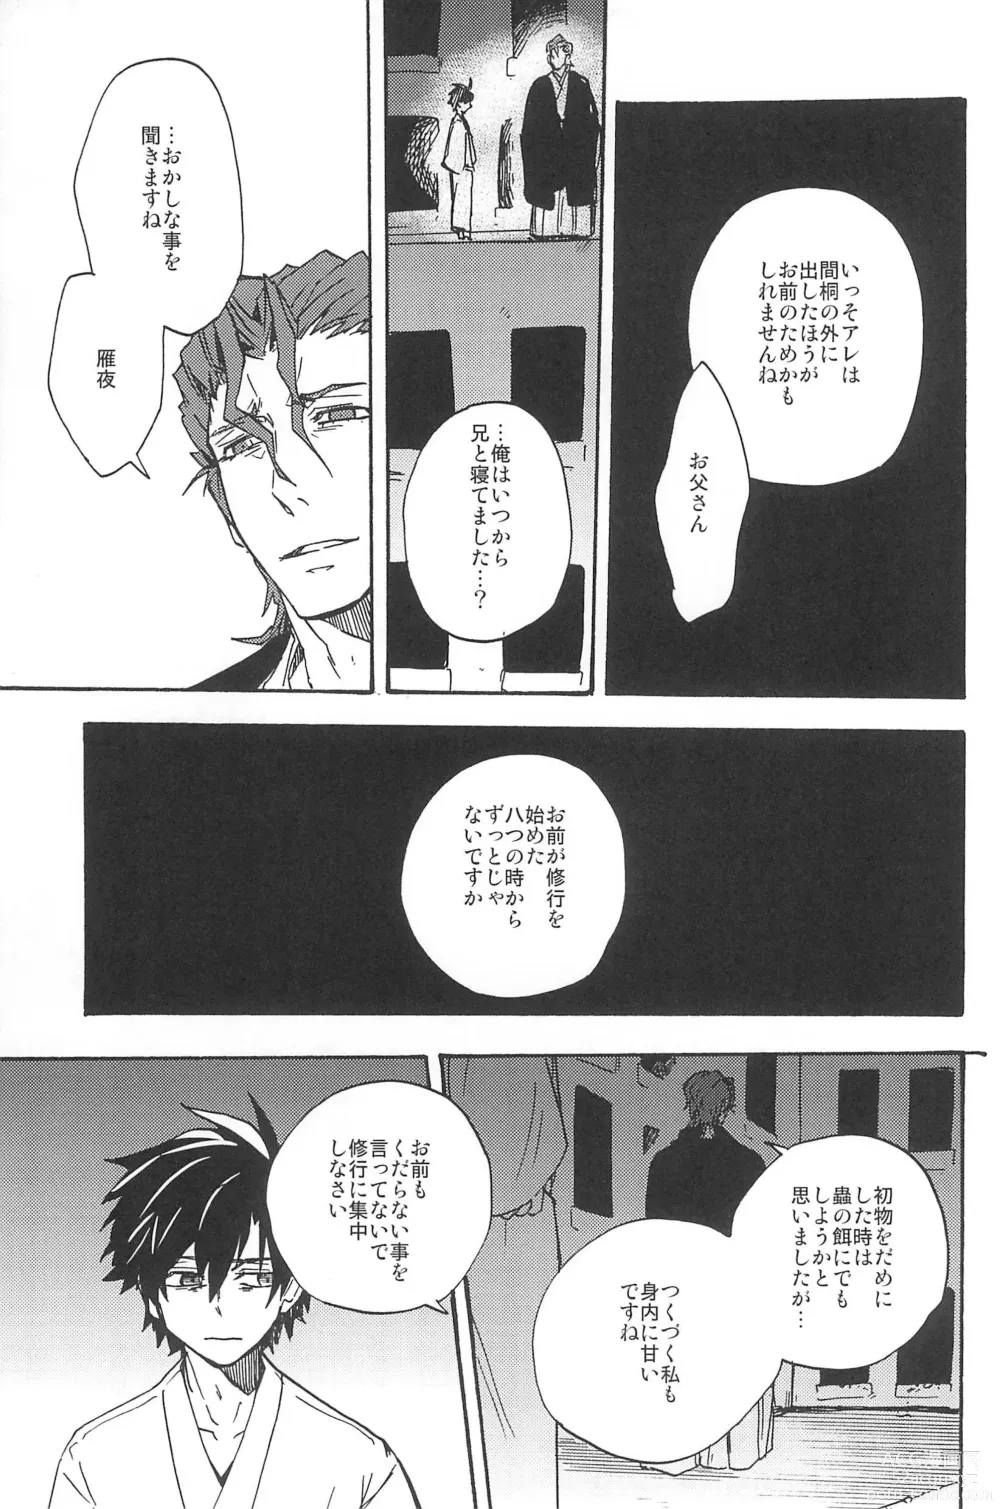 Page 309 of doujinshi RE:BERSERK